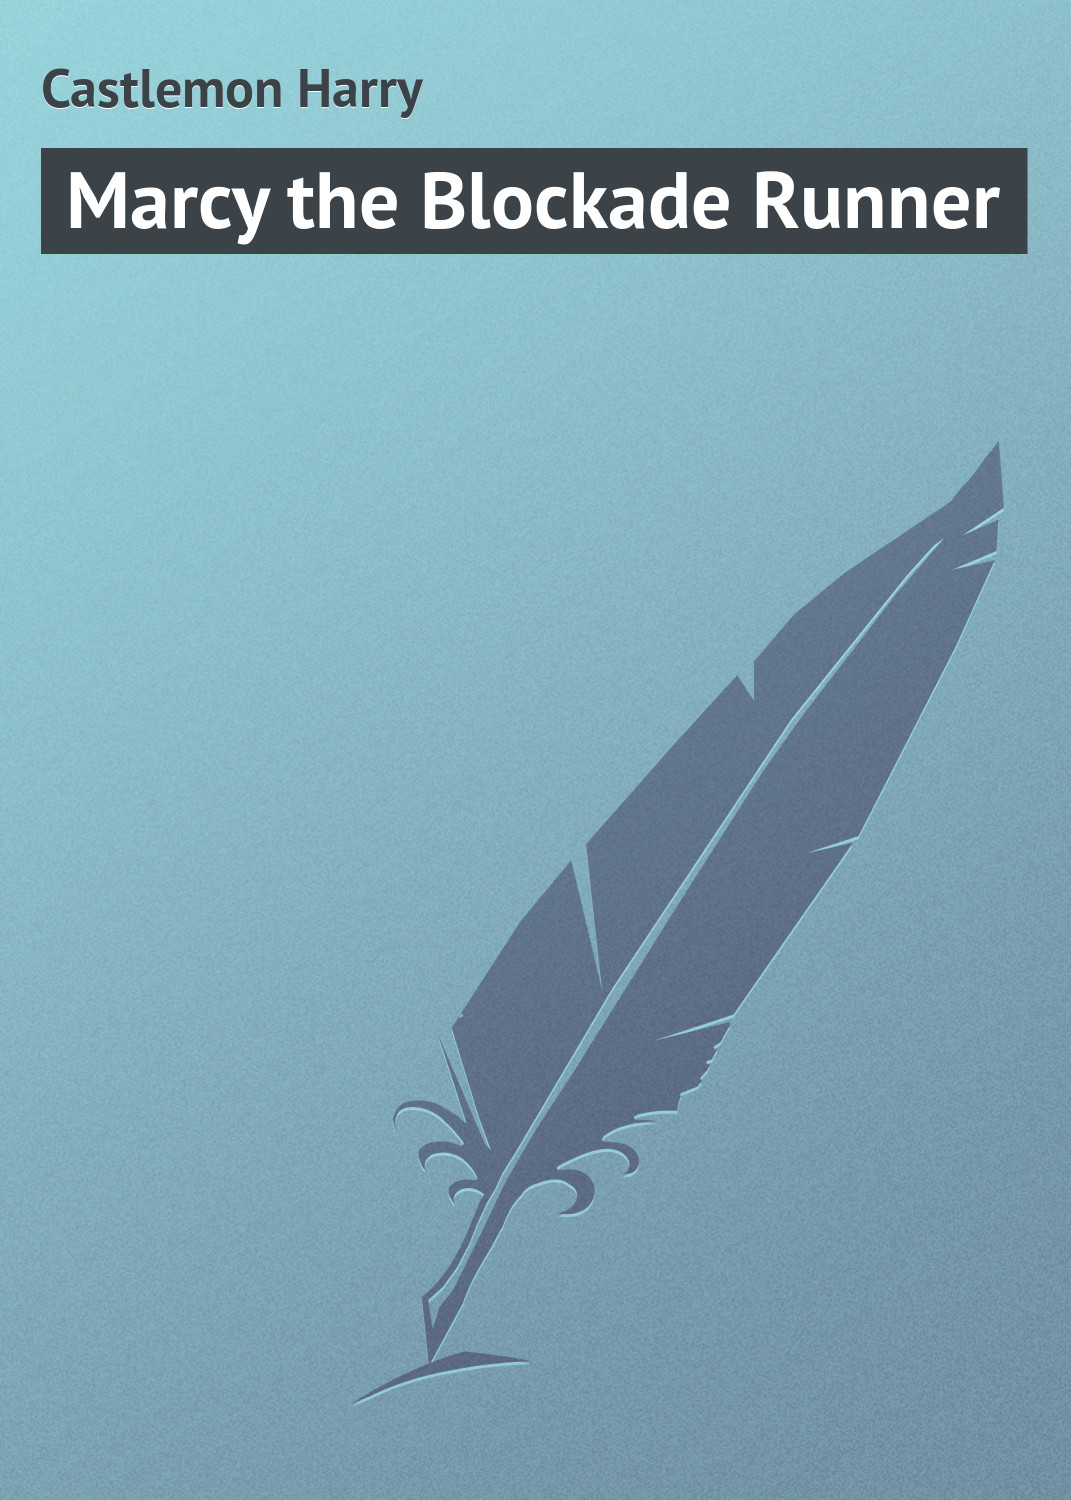 Книга Marcy the Blockade Runner из серии , созданная Harry Castlemon, может относится к жанру Зарубежная классика, Зарубежные детские книги. Стоимость электронной книги Marcy the Blockade Runner с идентификатором 23155283 составляет 5.99 руб.